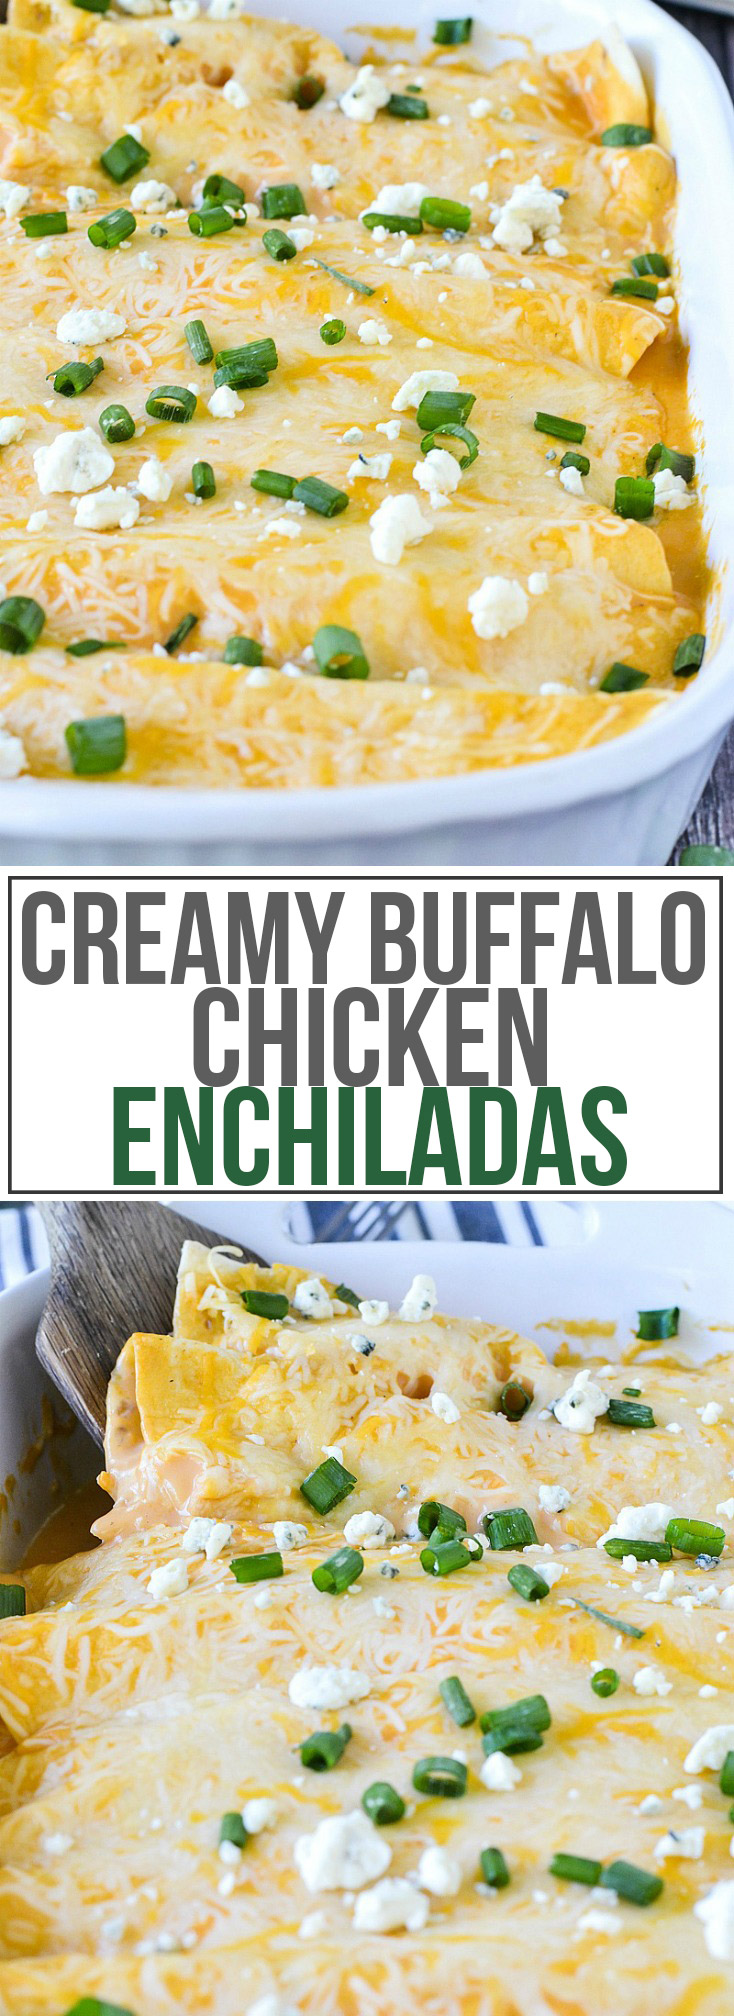 Creamy Buffalo Chicken Enchiladas | www.motherthyme.com